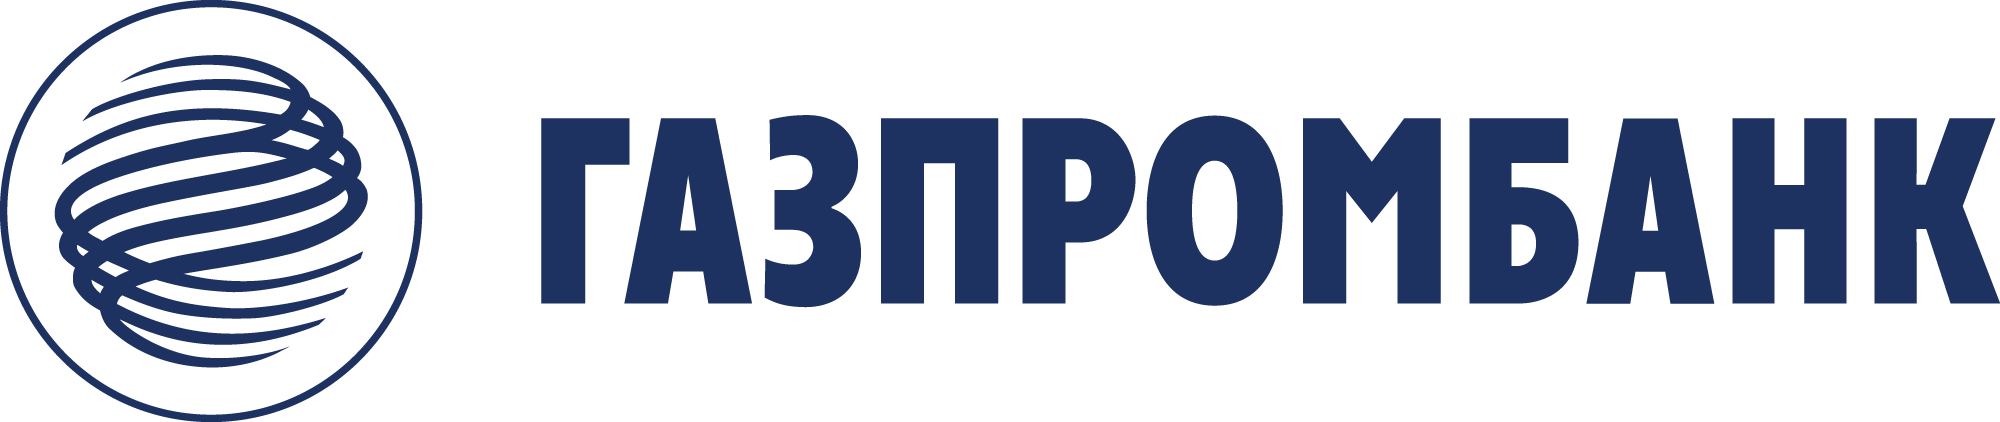 Банк оренбург онлайн личный